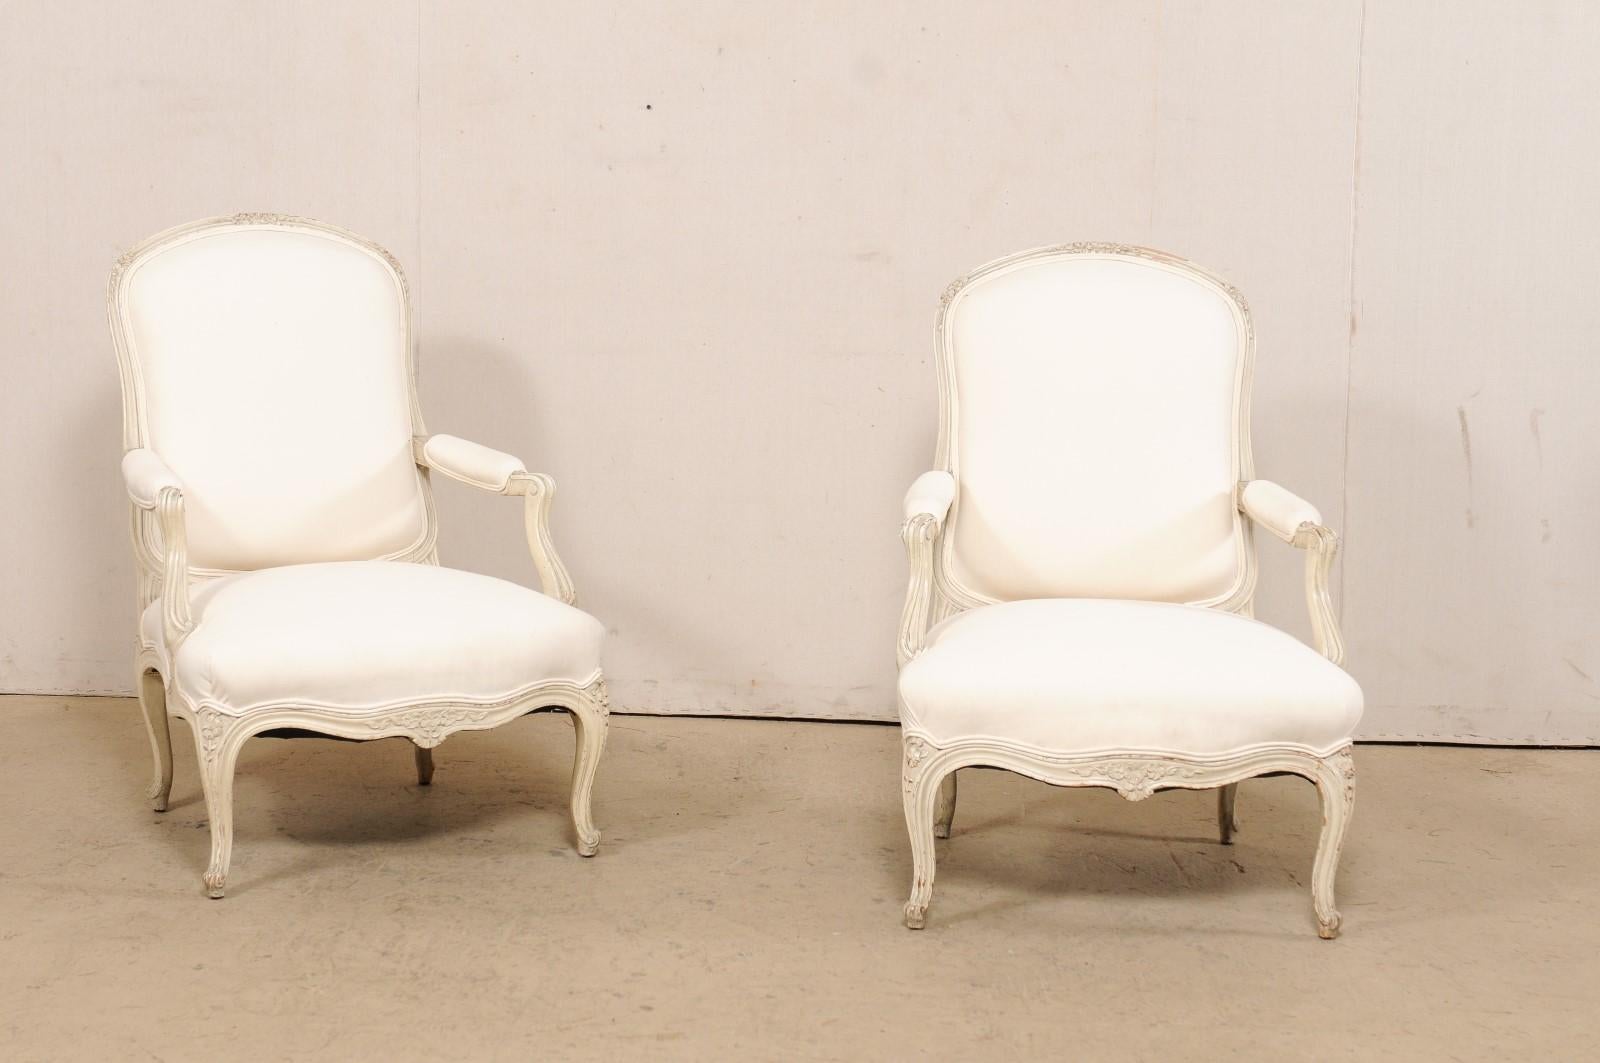 Paire de fauteuils en bois sculpté du début du 20e siècle. Cette paire de fauteuils anciens, originaires de France, présente des traverses supérieures légèrement arquées, sculptées d'un délicat motif floral, des accoudoirs aux manchettes paddées et